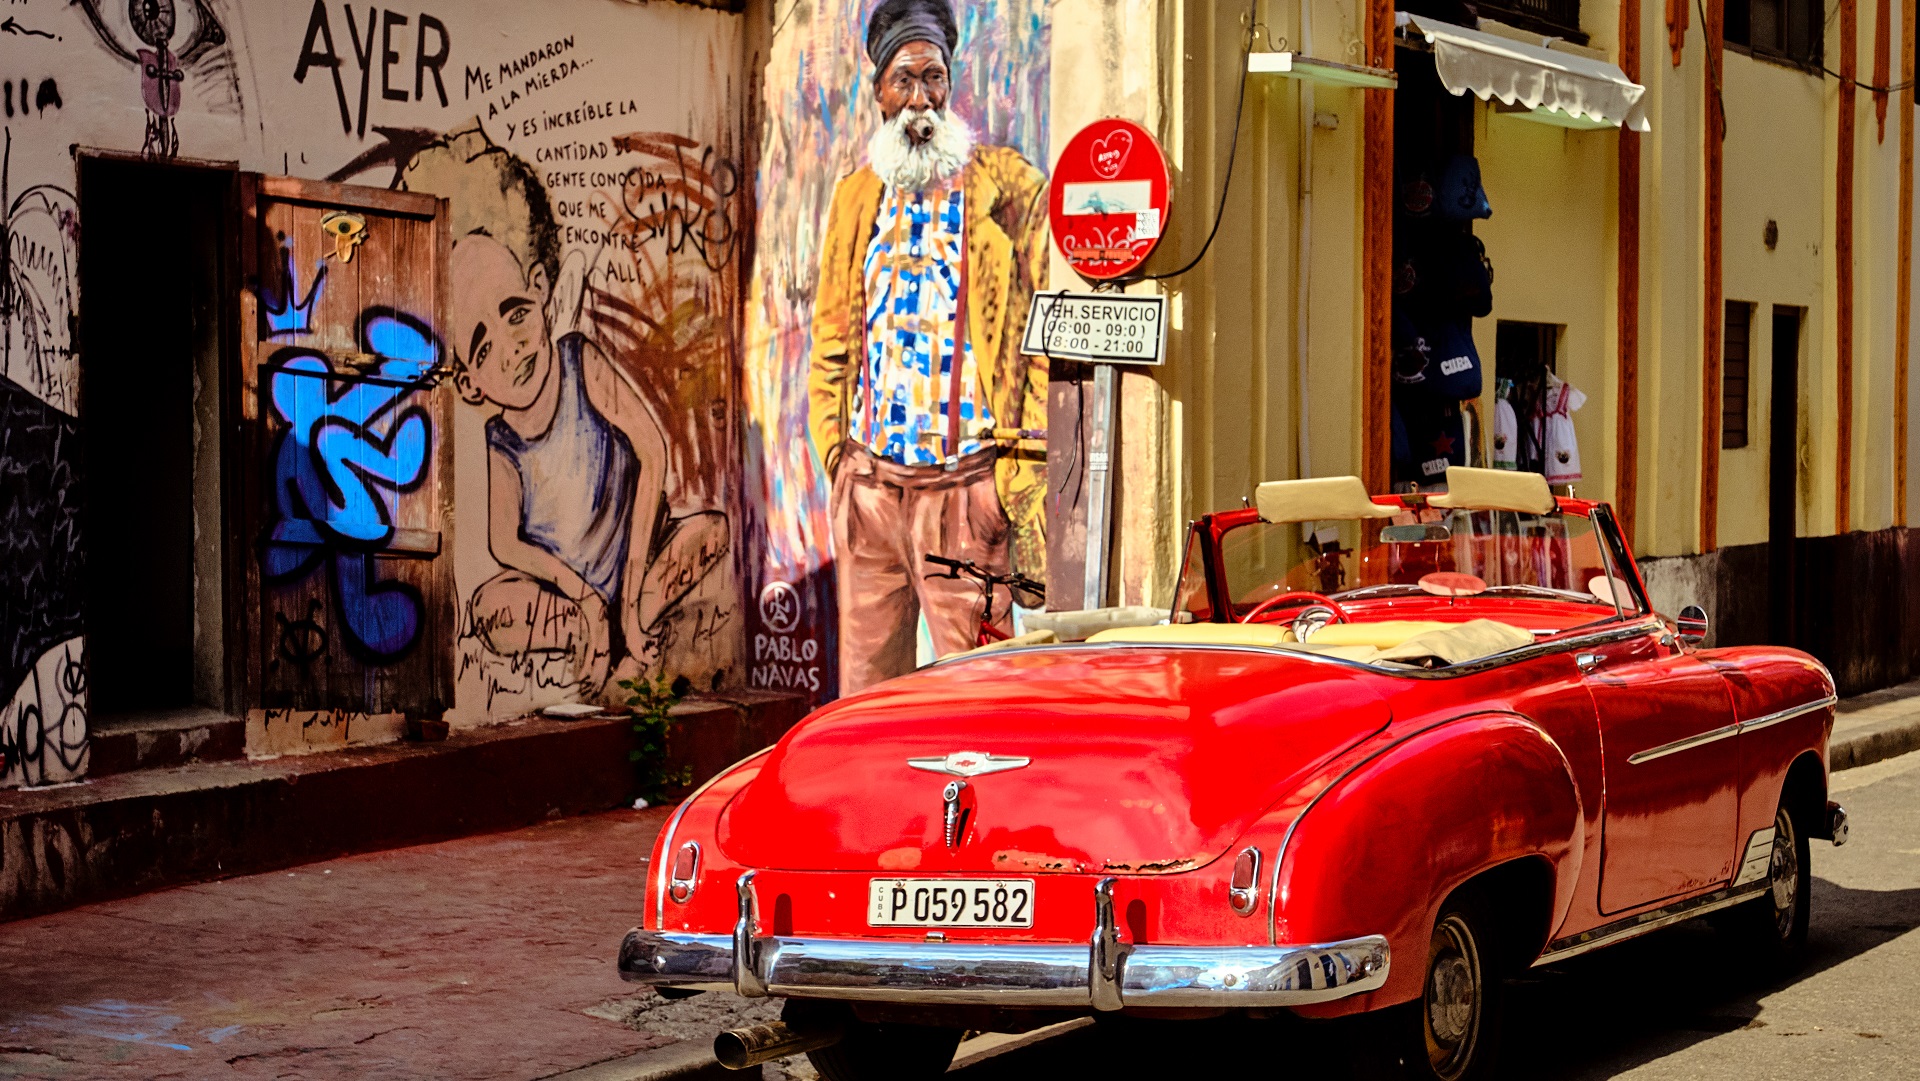 Havana streets - Graffiti - Classic american car in Havana, Cuba